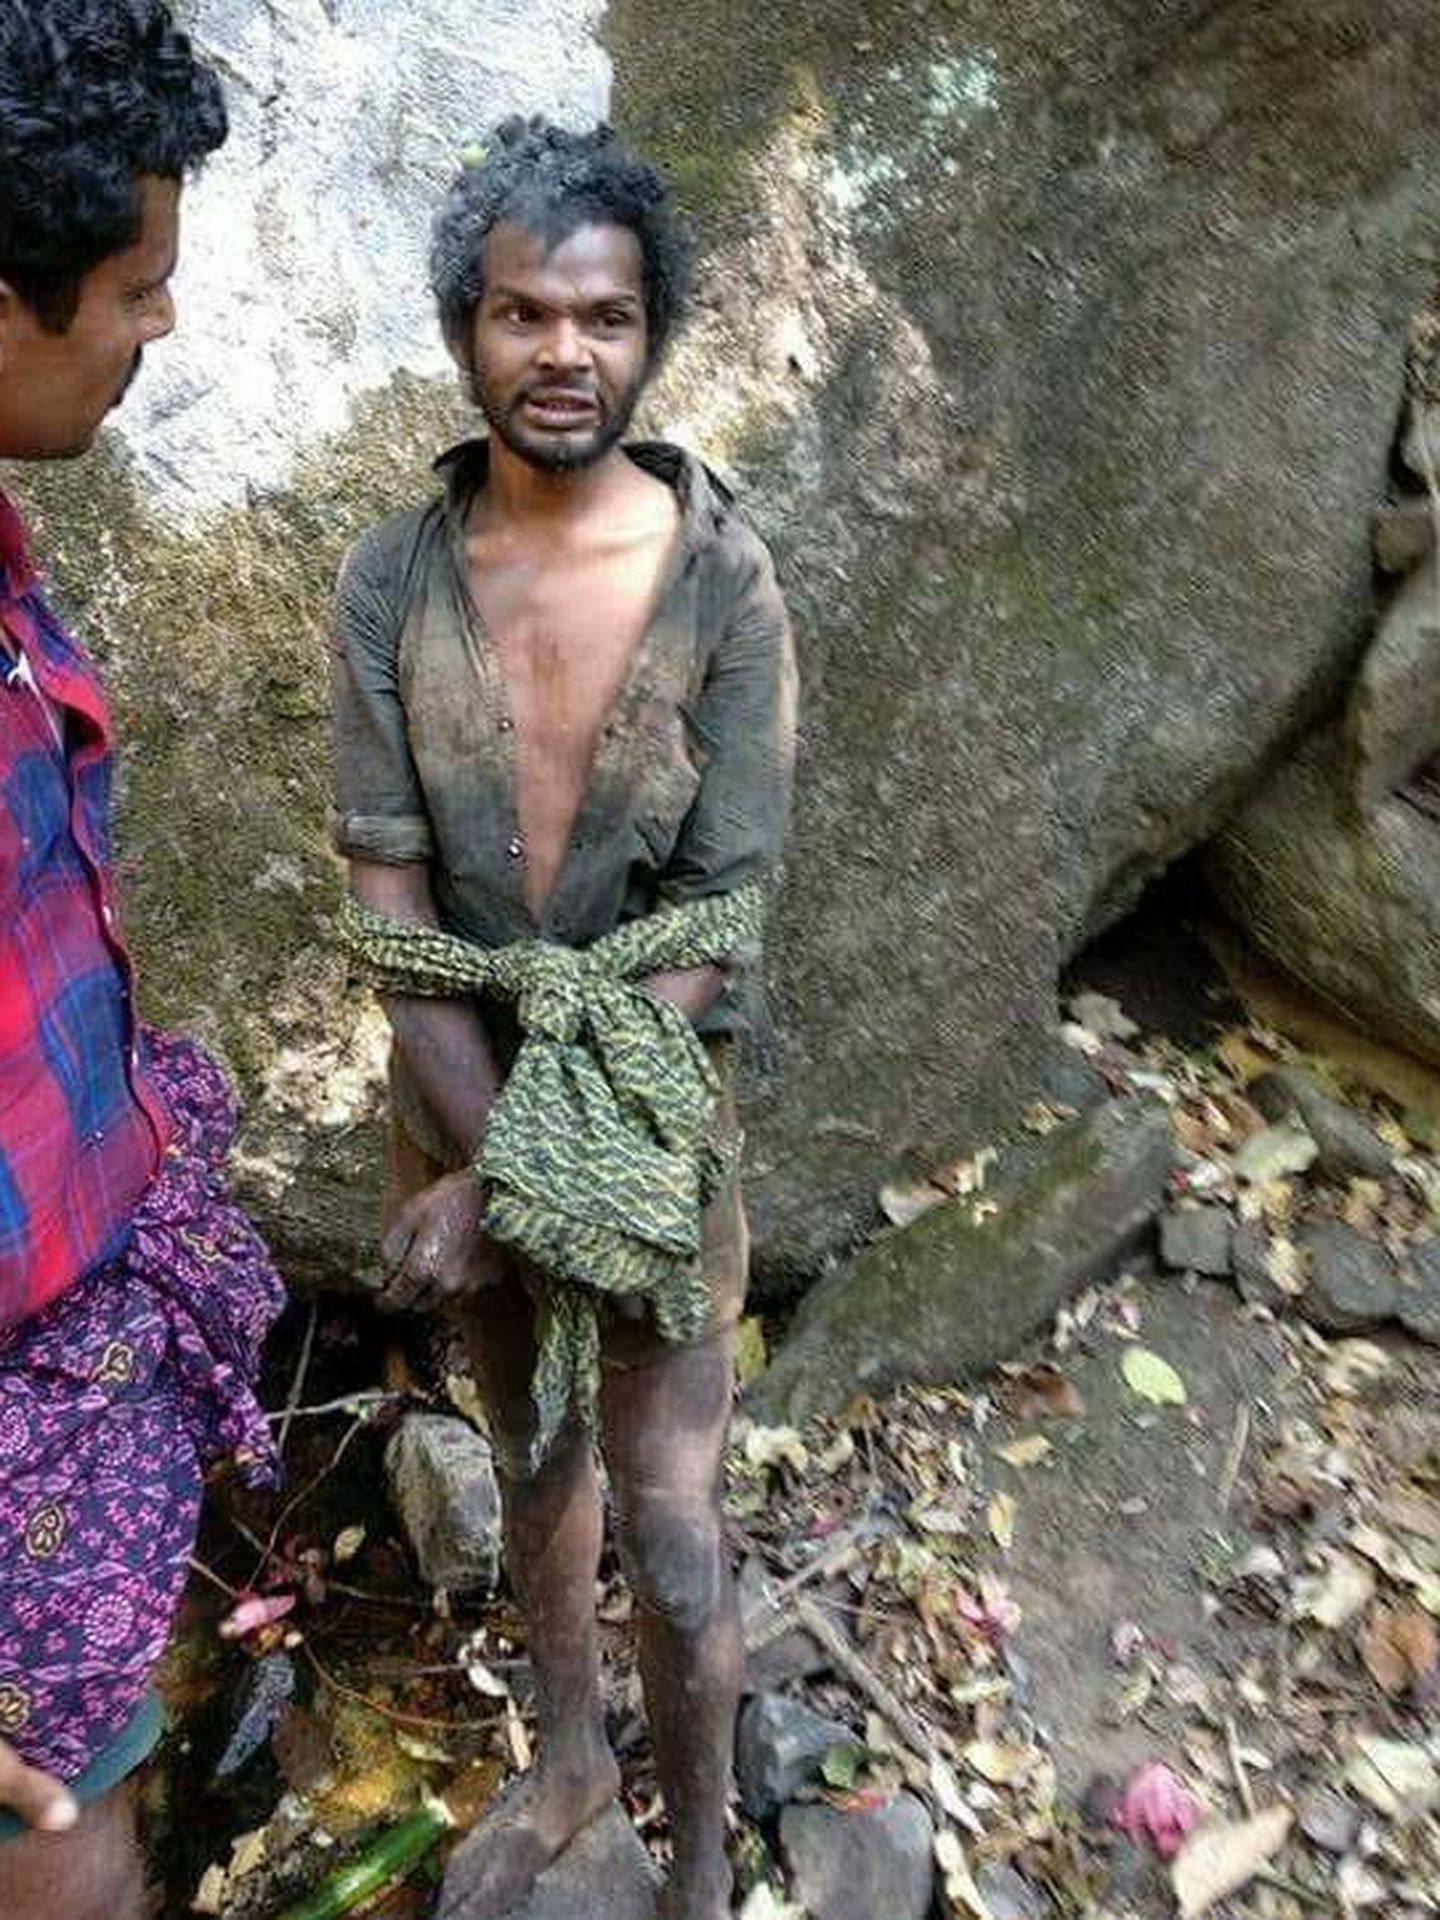 El joven Madhu antes de ser linchado, en una imagen difundida en las redes sociales